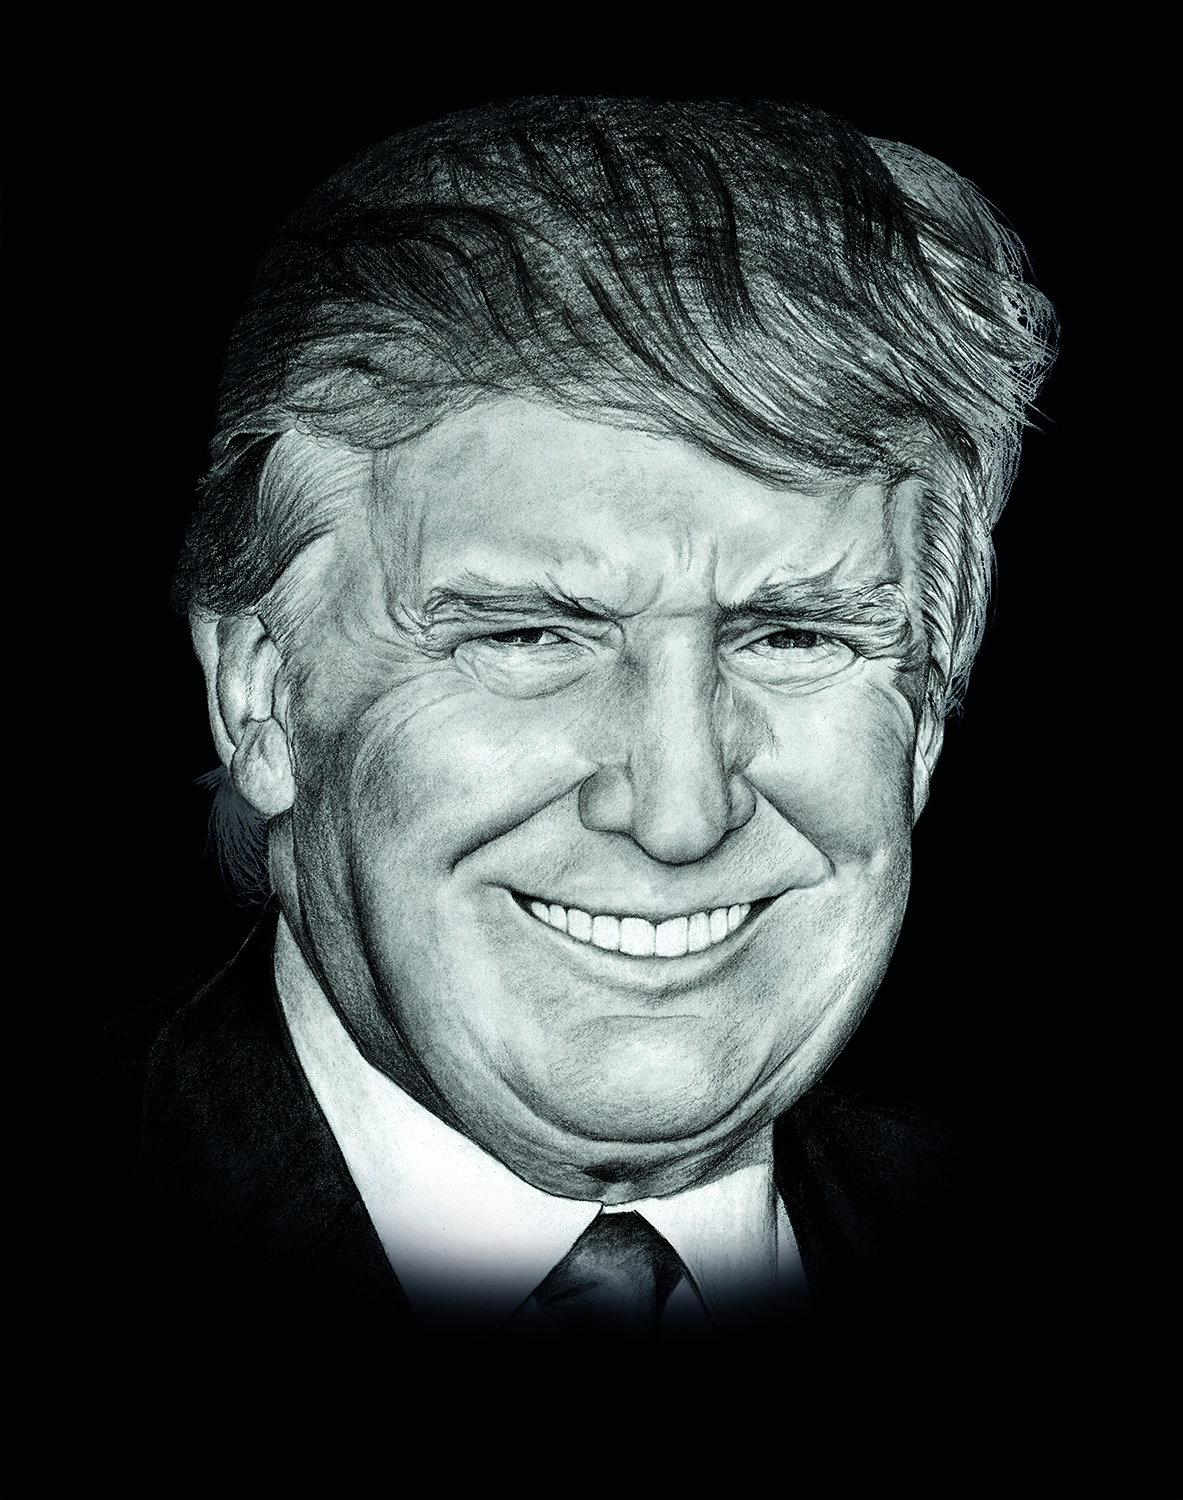 Donald Trump - reprodukce kresby - NA OBJEDNÁVKU DO 5 DNŮ